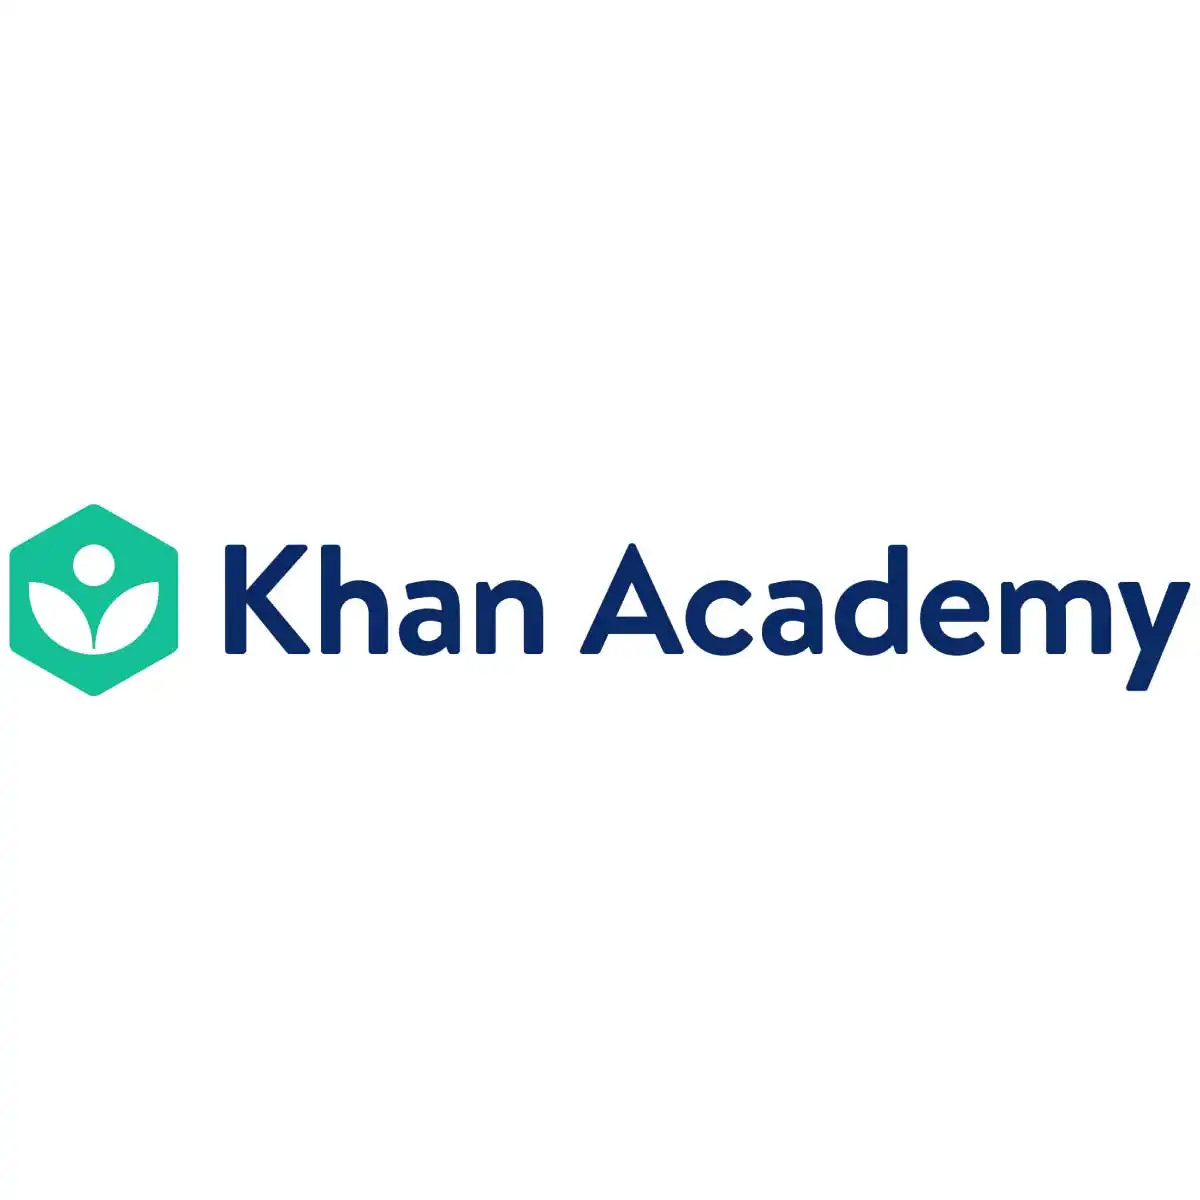 En İyi Online Eğitim Siteleri Khan Academy